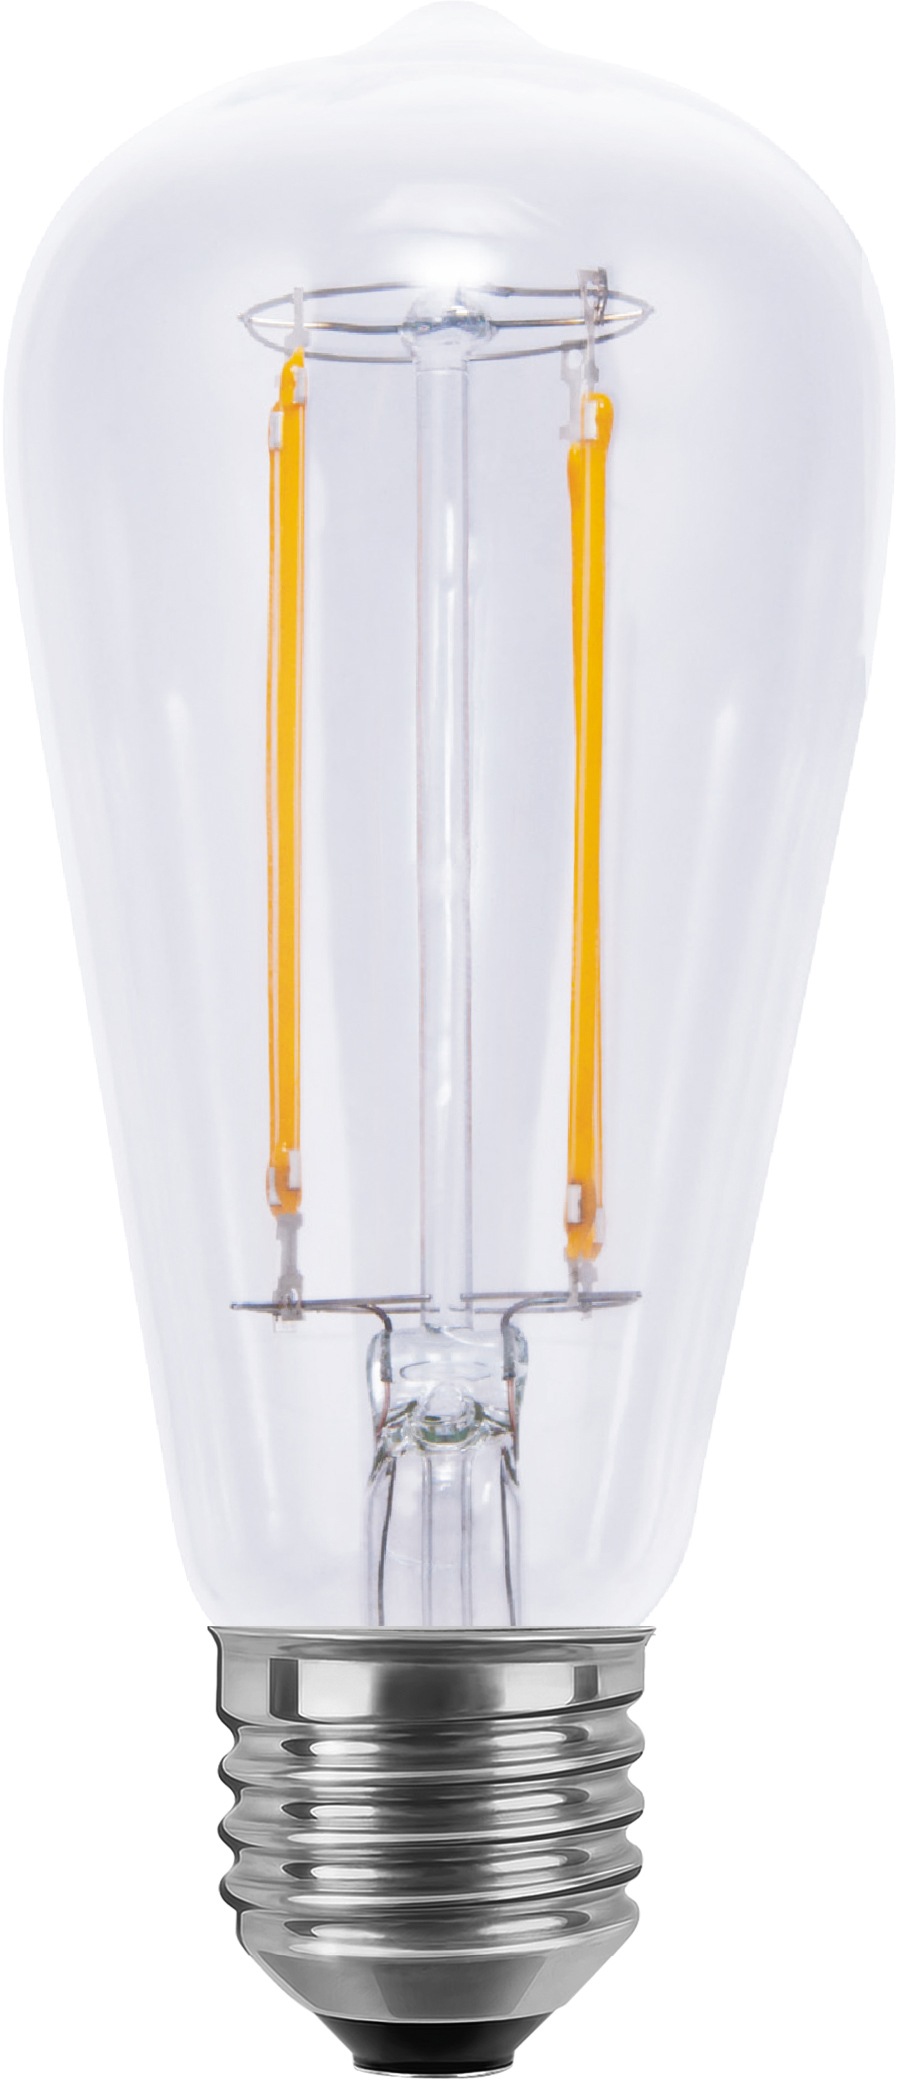 SEGULA LED-Leuchtmittel »Vintage Line«, E27, 1 St., Warmweiß, dimmbar, Rustika Lampe, klar, 2700K, E27